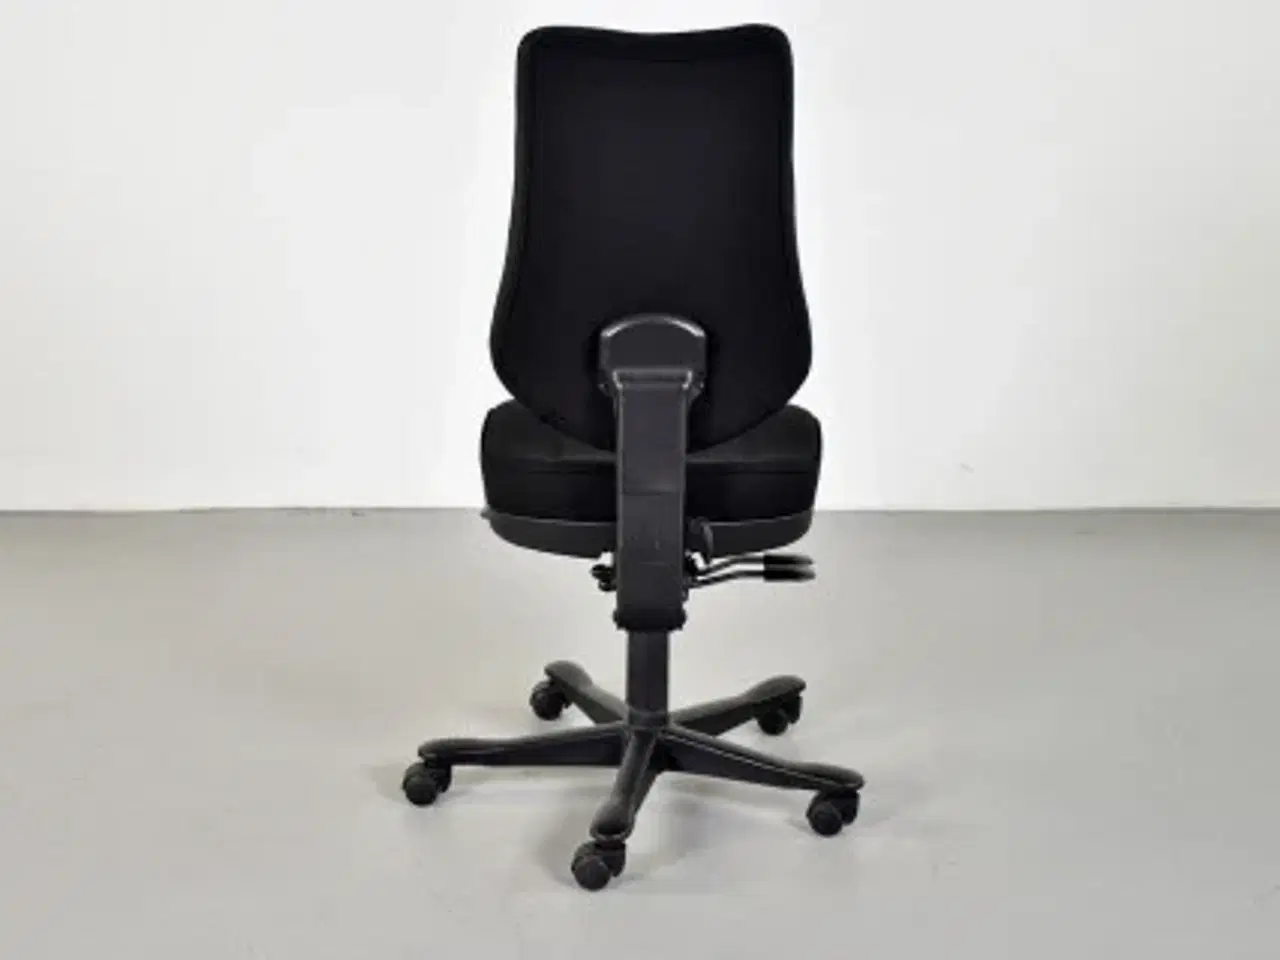 Billede 3 - Rbm model 800 kontorstol med høj ryg og nyt sort polster